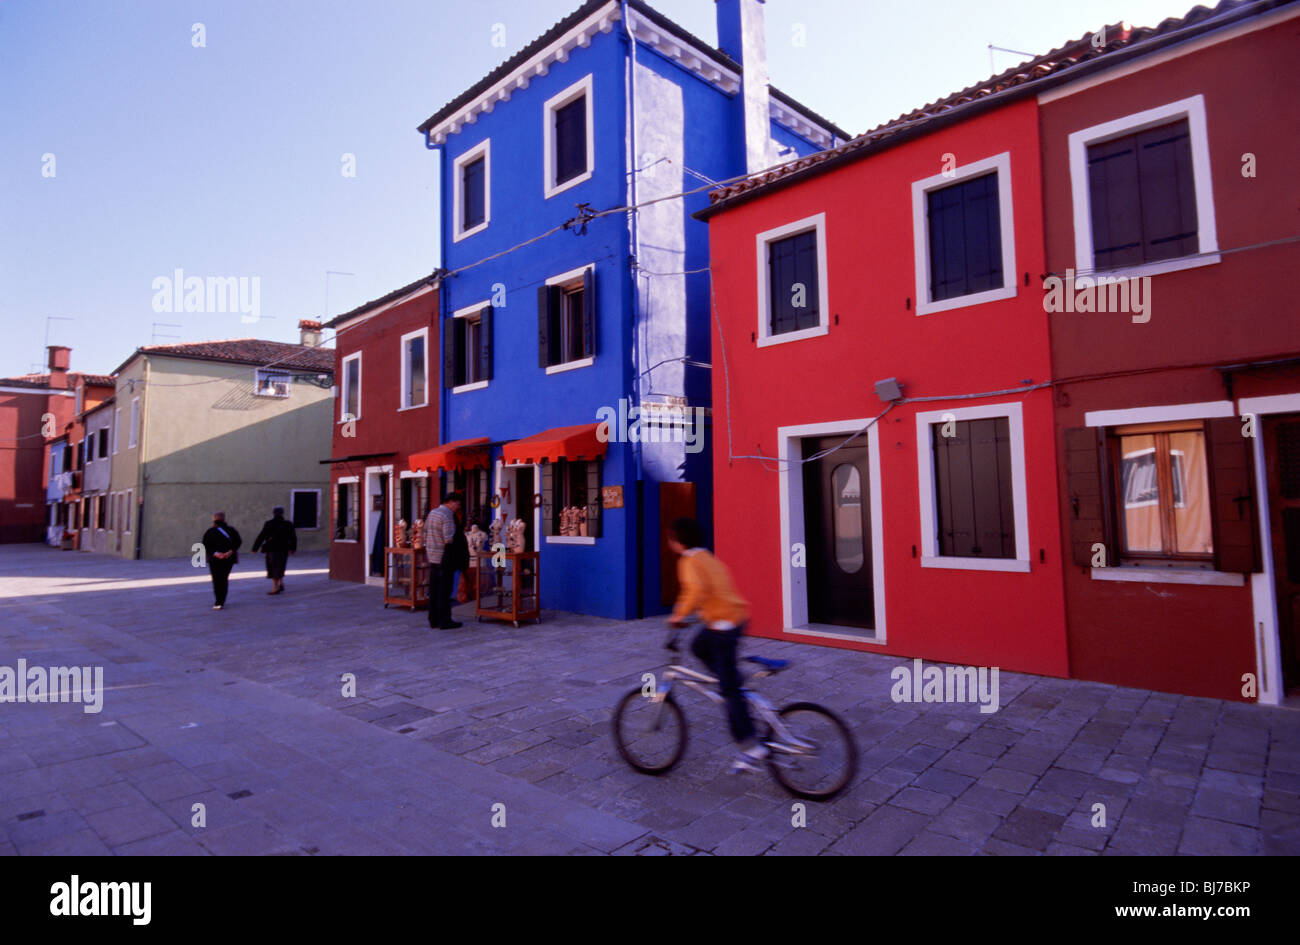 Venedig, März 2008 - Kind auf Fahrrad geht bunten Häuser nach Burano, eine Insel in der Lagune von Venedig. Stockfoto